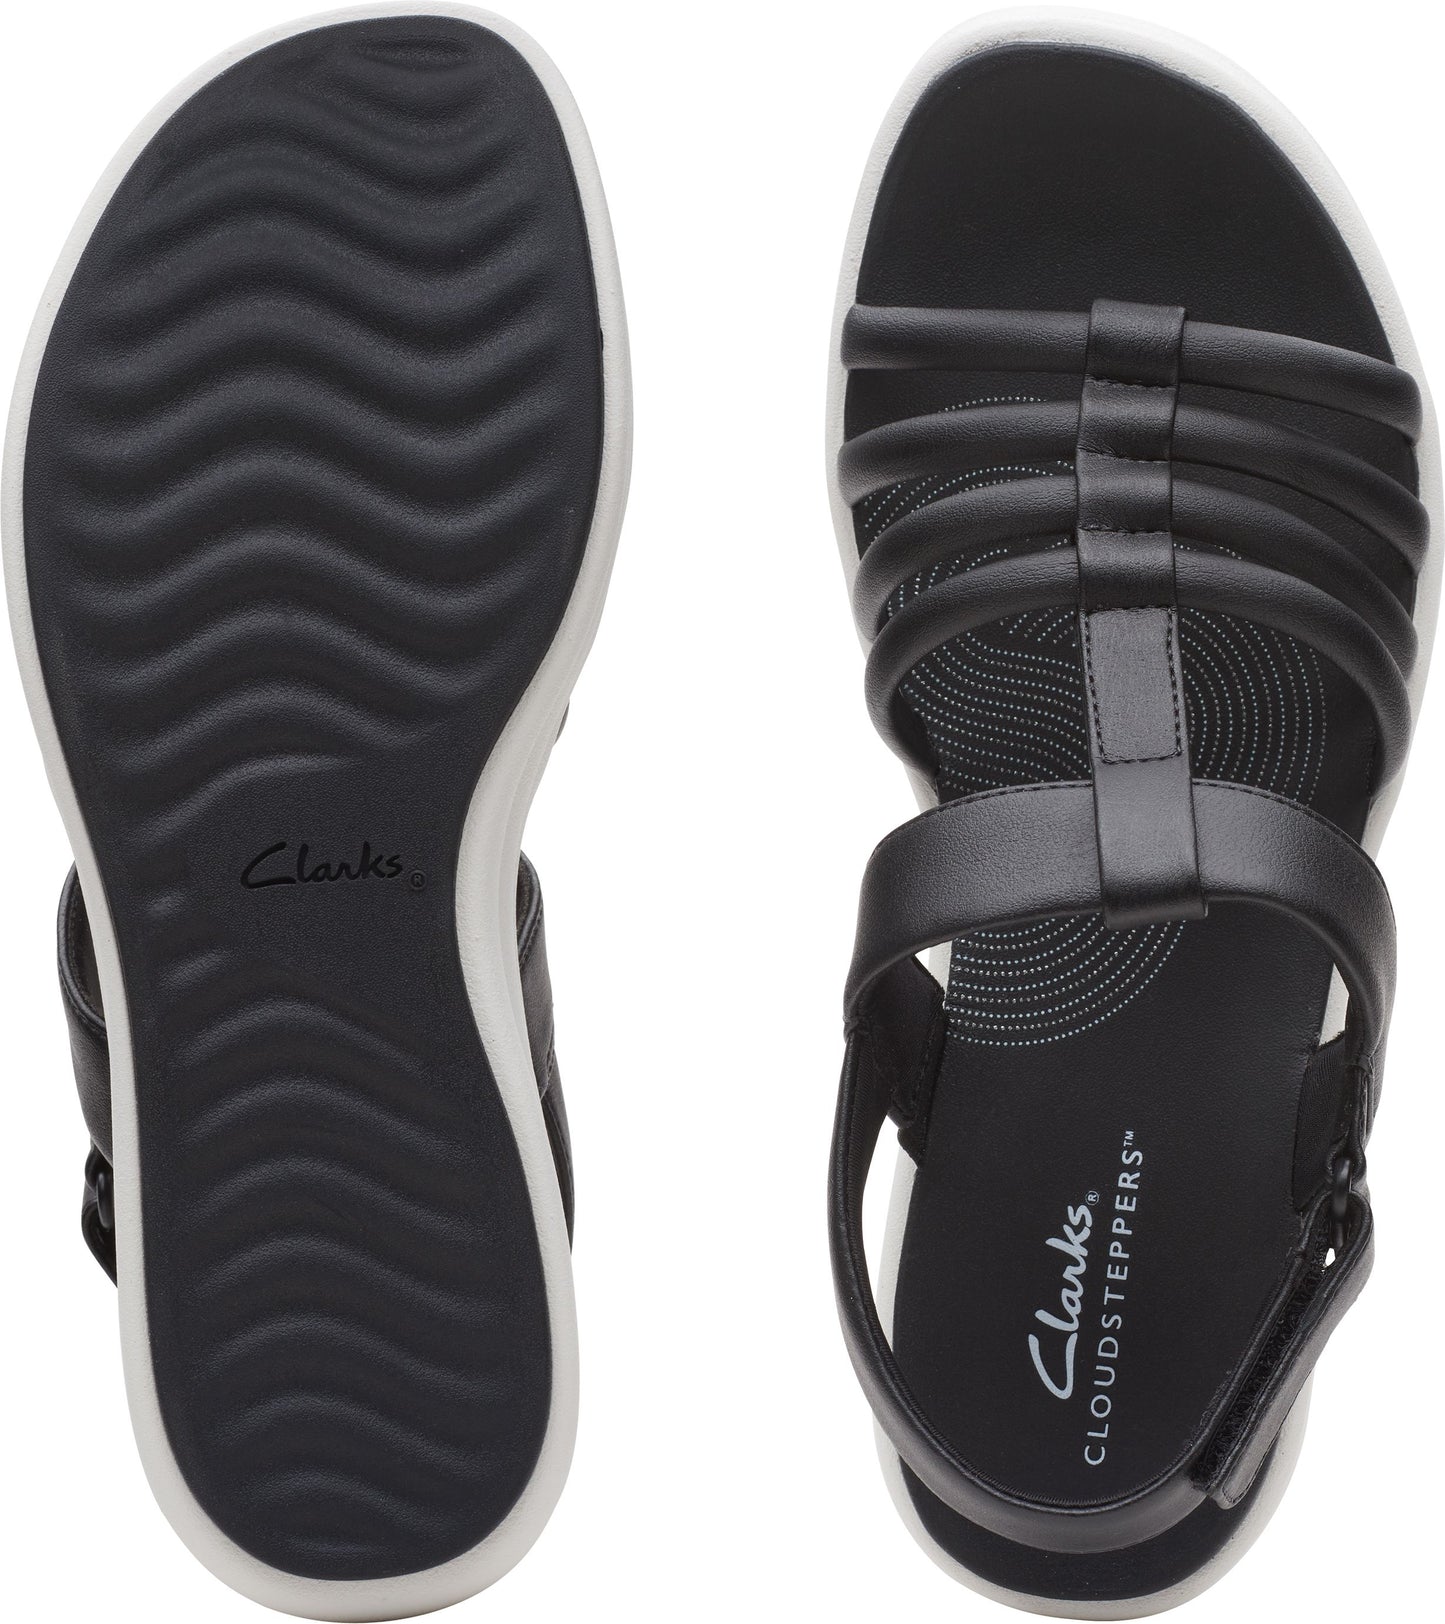 Clarks Sandals Drift Ease Black